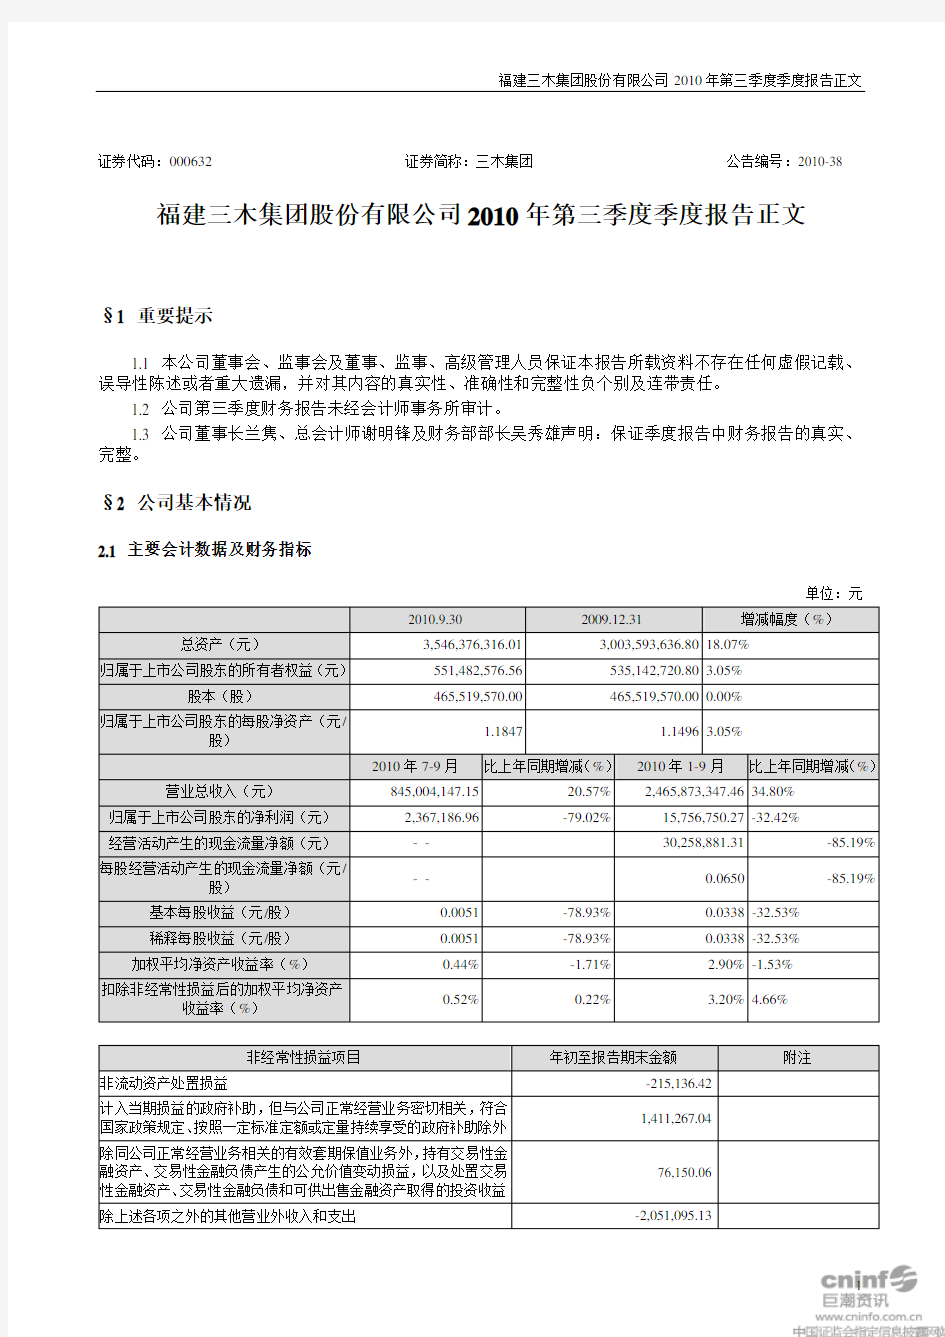 福建三木集团股份有限公司2010年第三季度季度报告正文